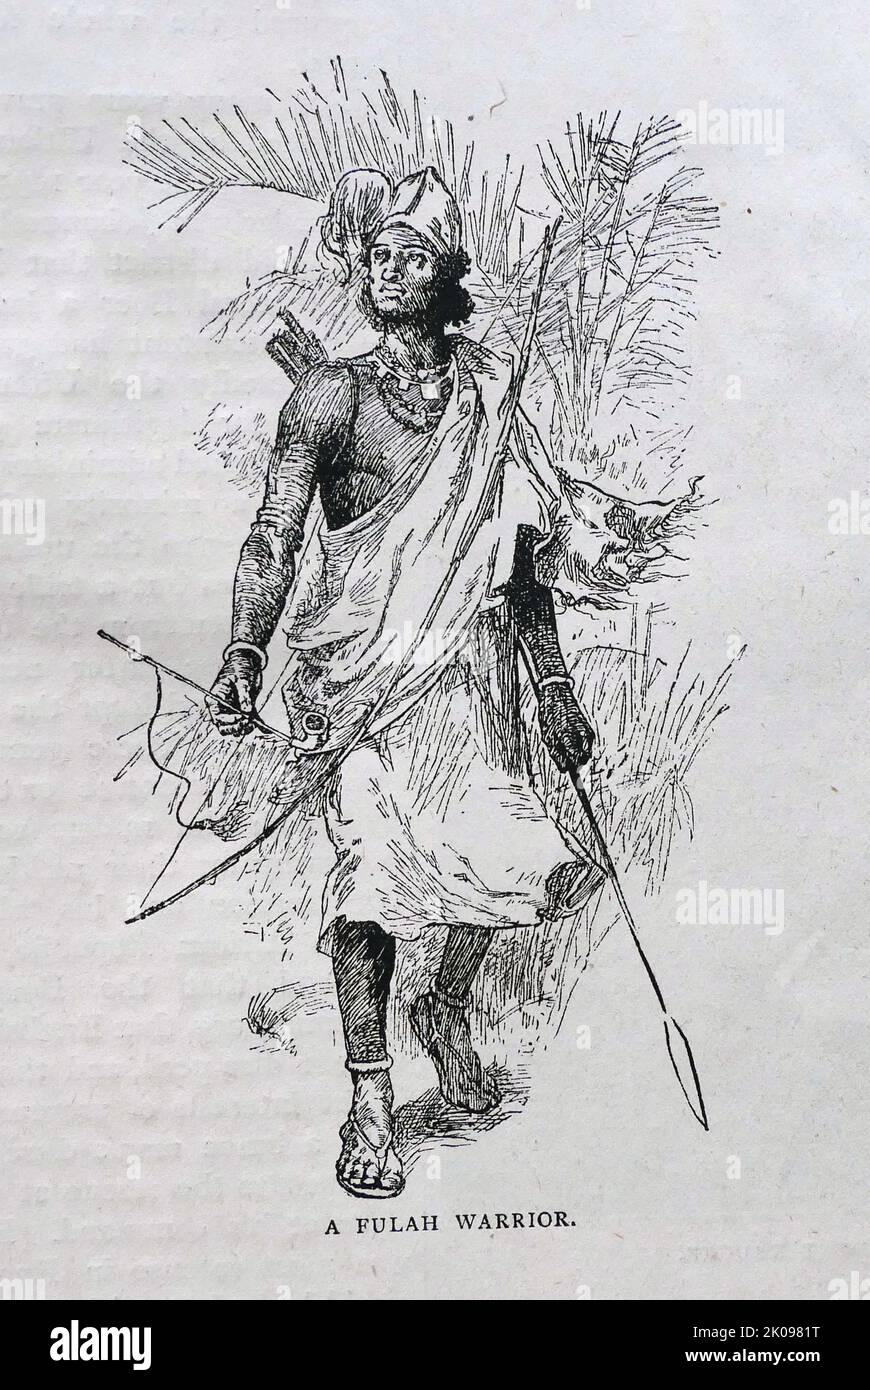 Ein Fulah-Krieger. Die Fula, Fulani oder Fulbe sind eine der größten ethnischen Gruppen in der Sahelzone und Westafrika, die weit über die Region verstreut sind. Schwarz-Weiß-Zeichnung. Stockfoto